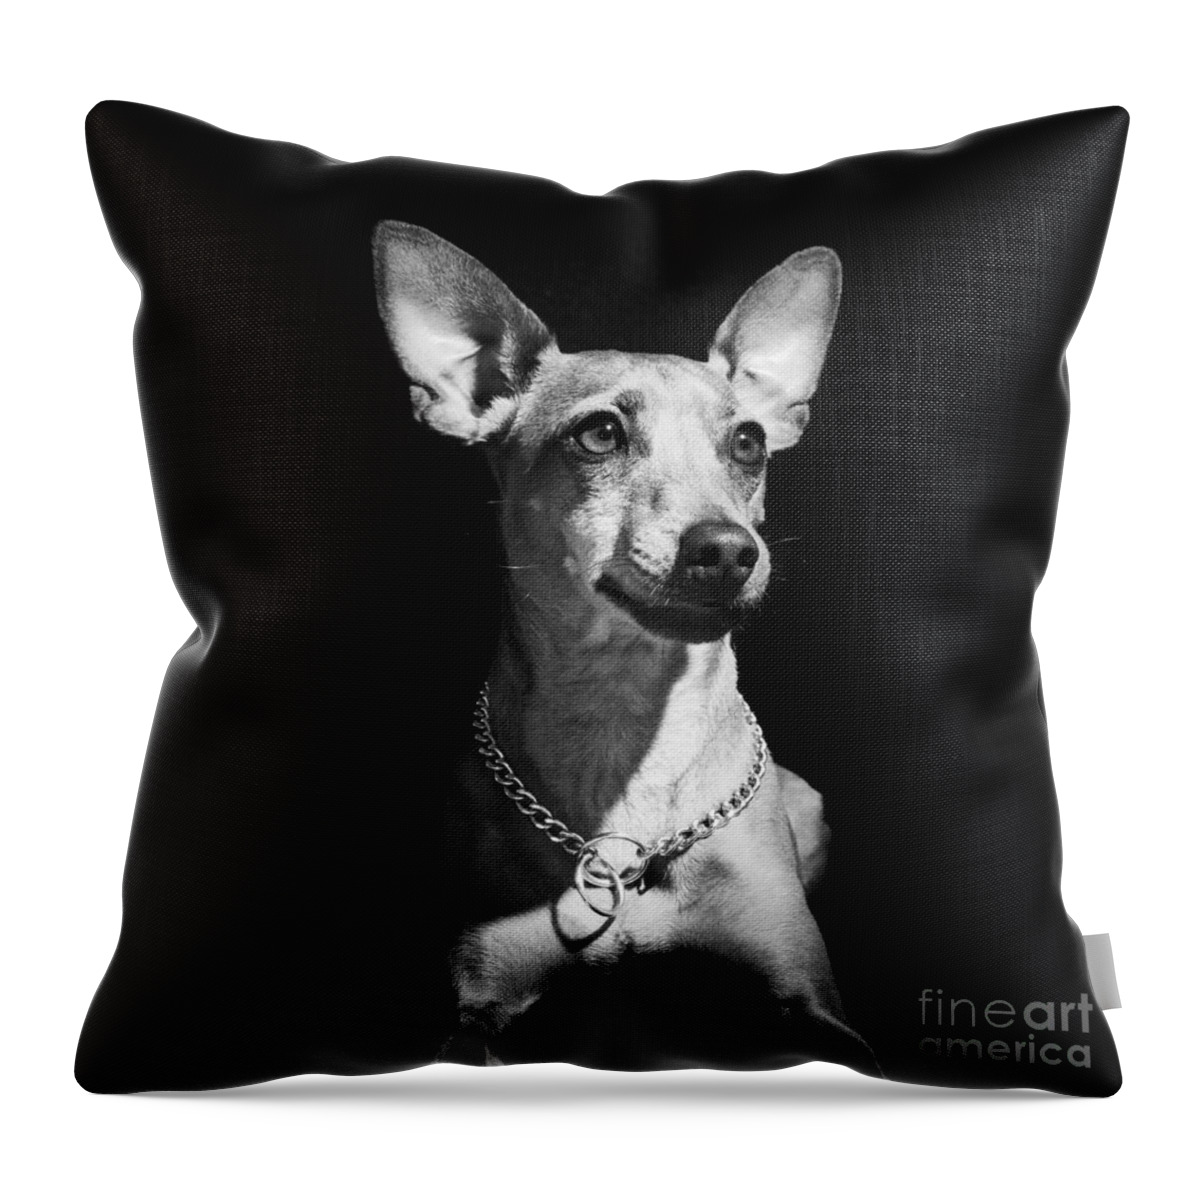 Dog Throw Pillow featuring the photograph Miniature Pinscher dog by Gunnar Orn Arnason